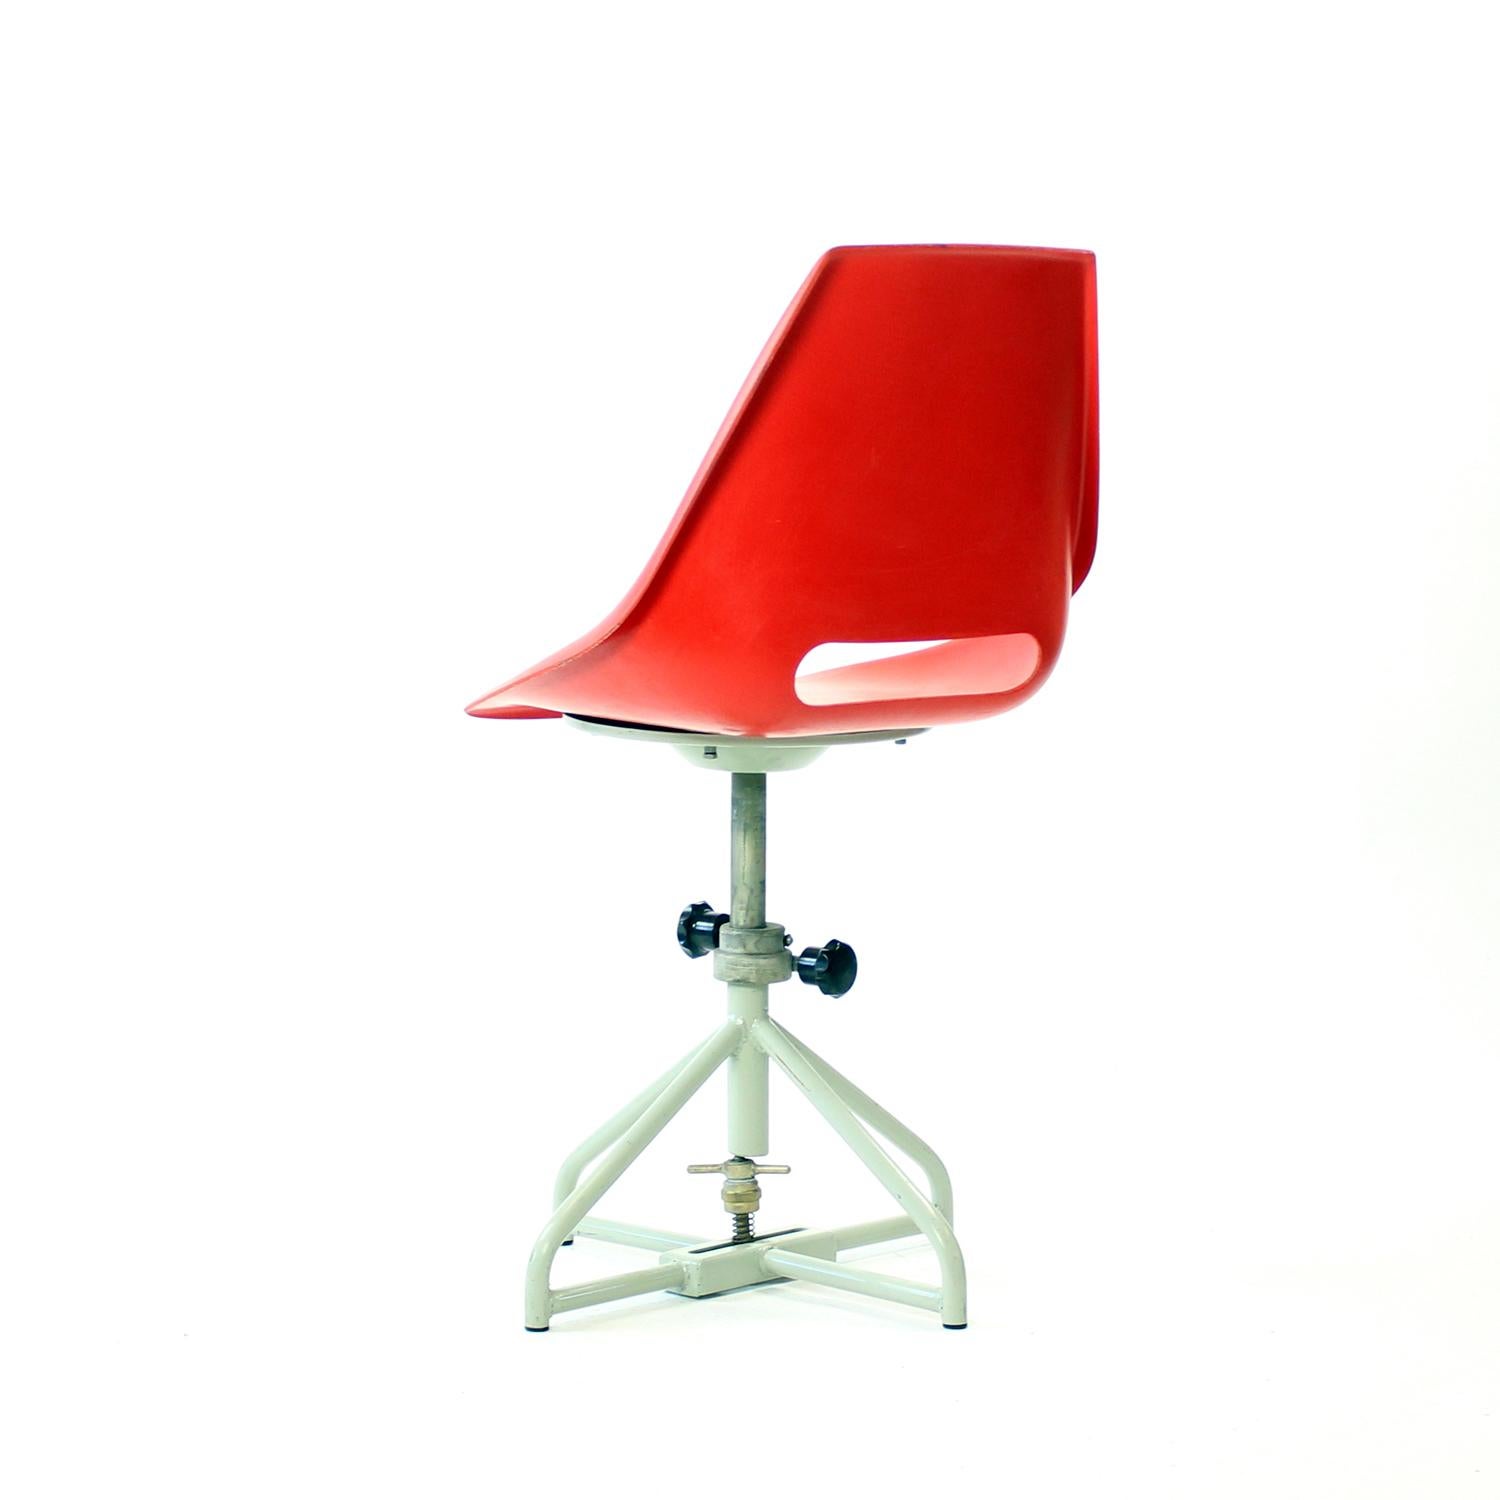 Red Tram Chair By Miroslav Navratil For Vertex, 1960s For Sale 1